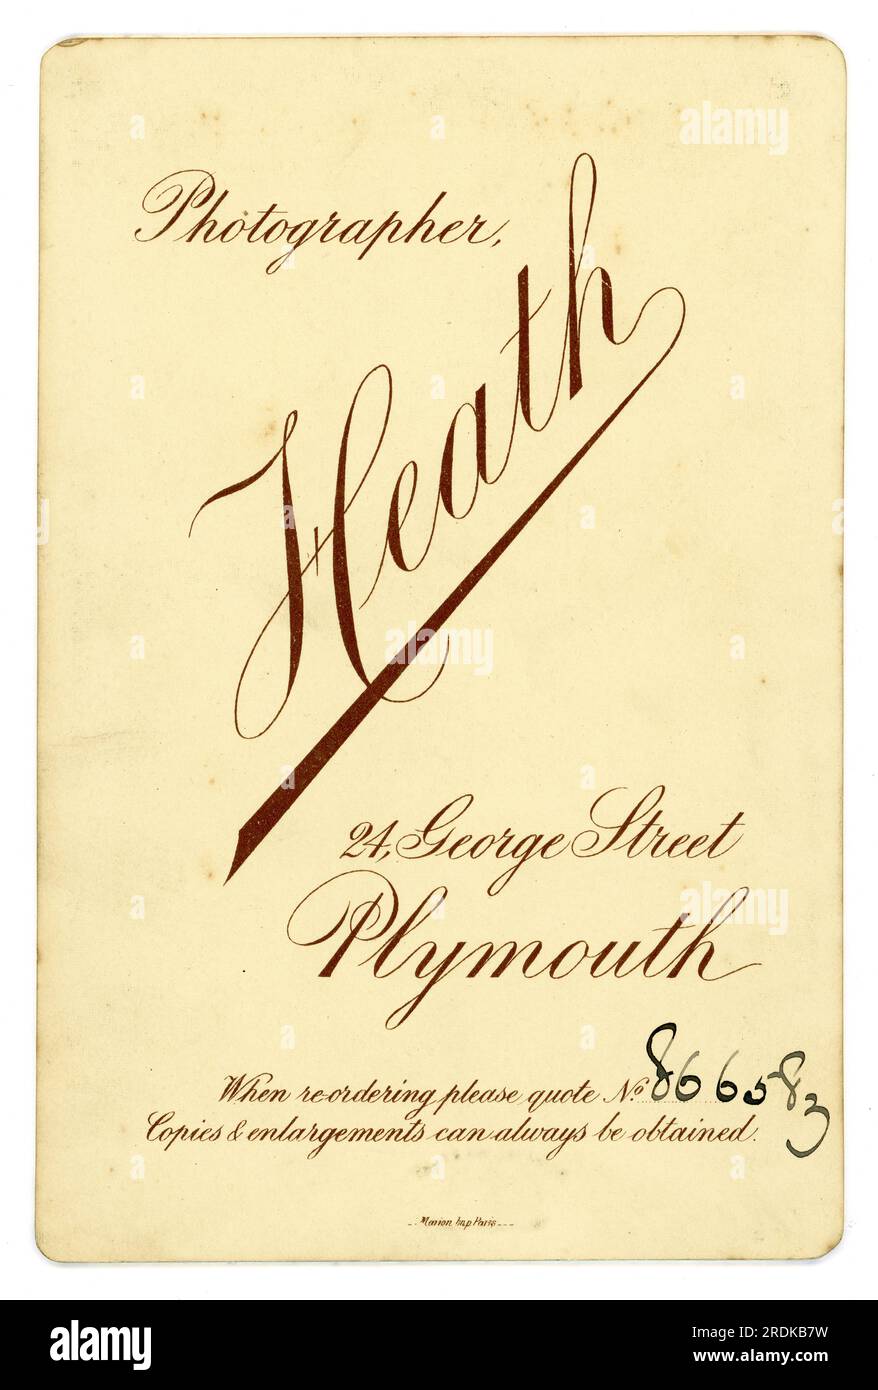 Original viktorianische Kabinettkarte, um 1894. Aus dem Studio von William Heath, Plymouth, Devon, England, Großbritannien Stockfoto